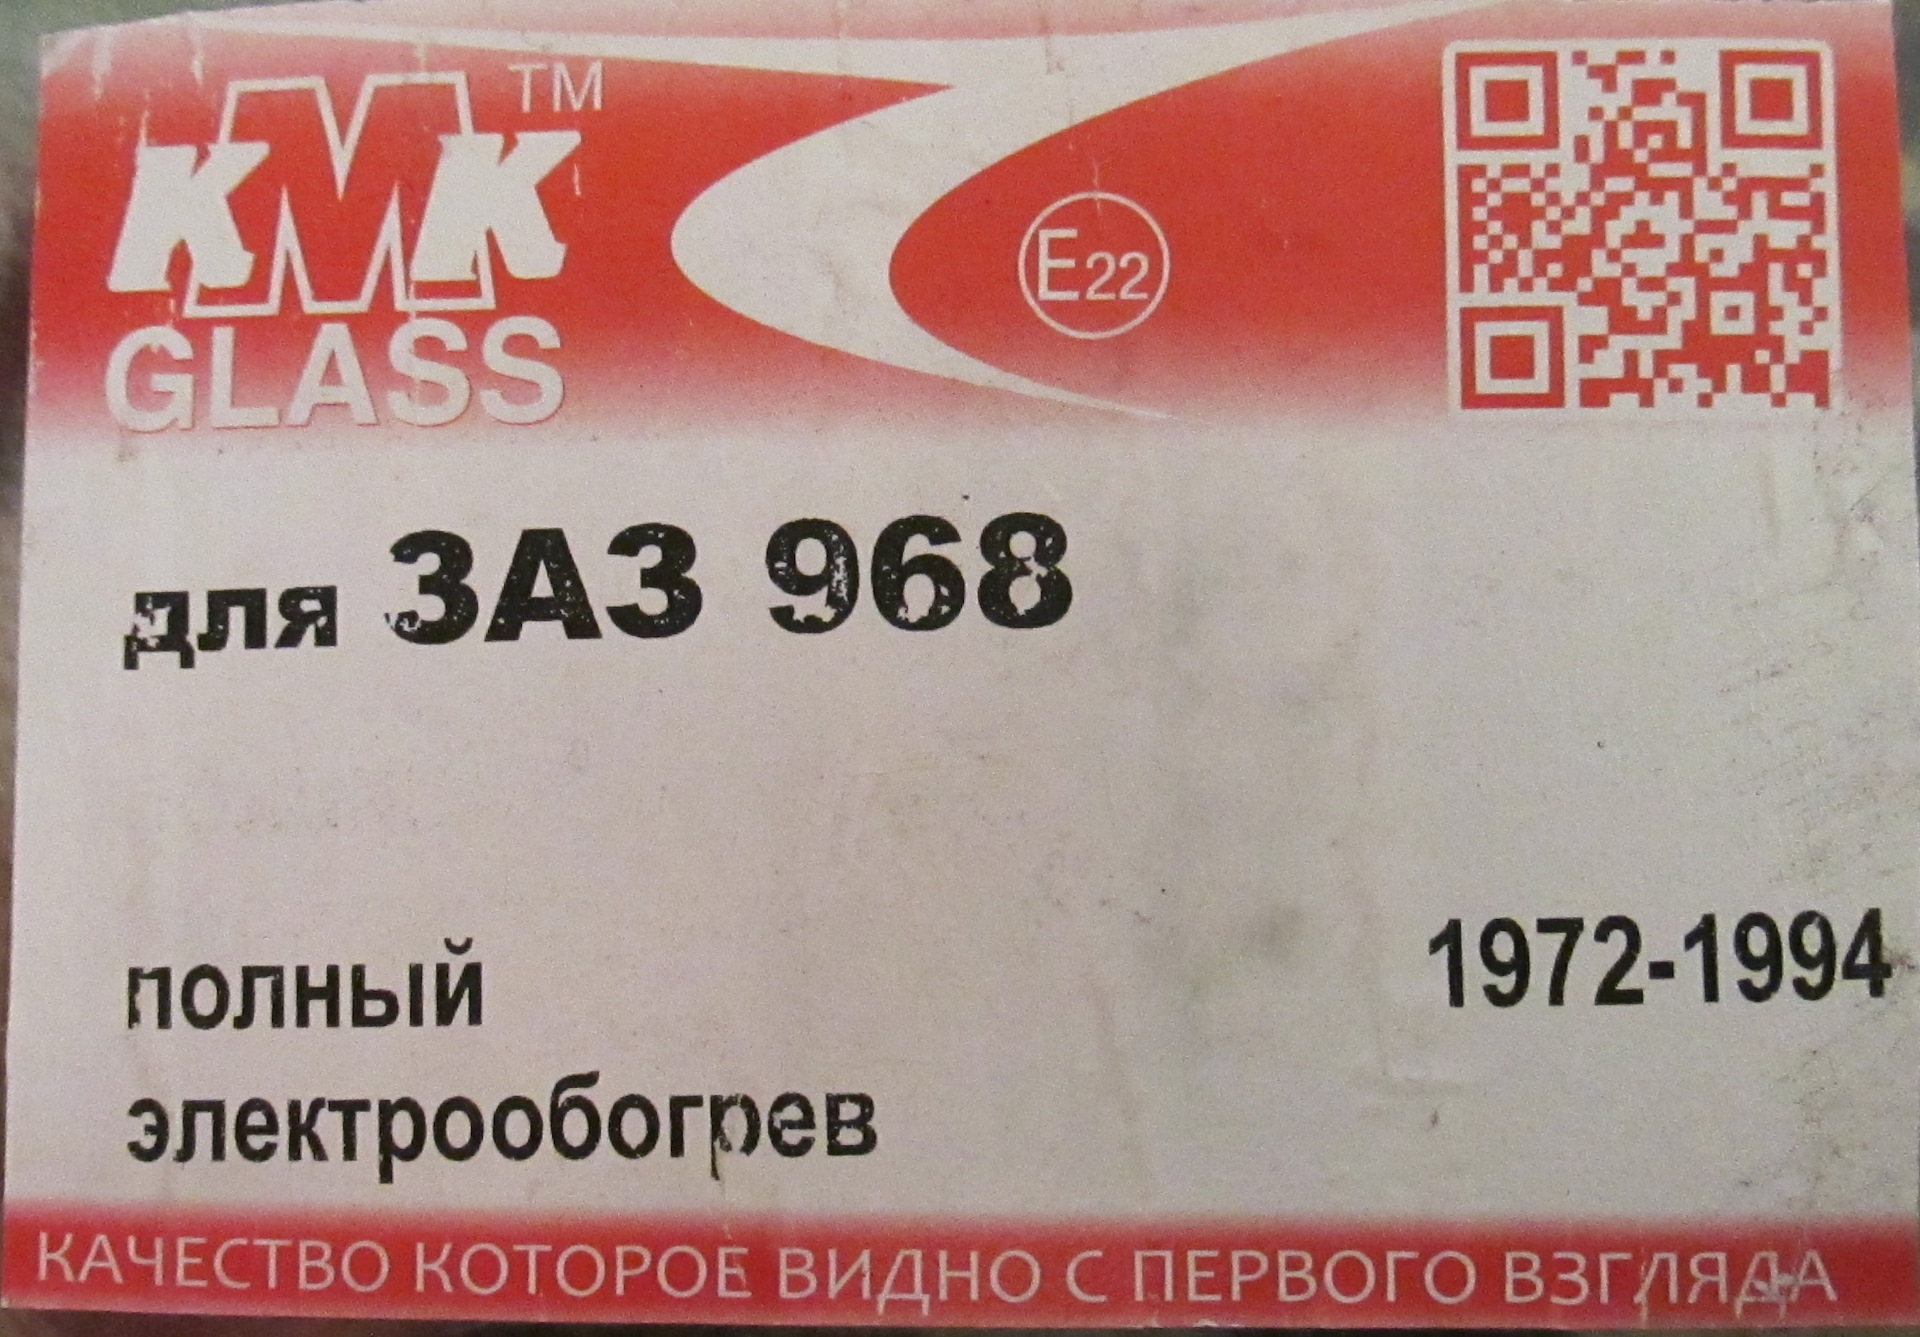 Стекла кмк отзывы. Производители стекла KMK. КМК Glass. KMK Glass Россия. KMK Glass 3014bclh.